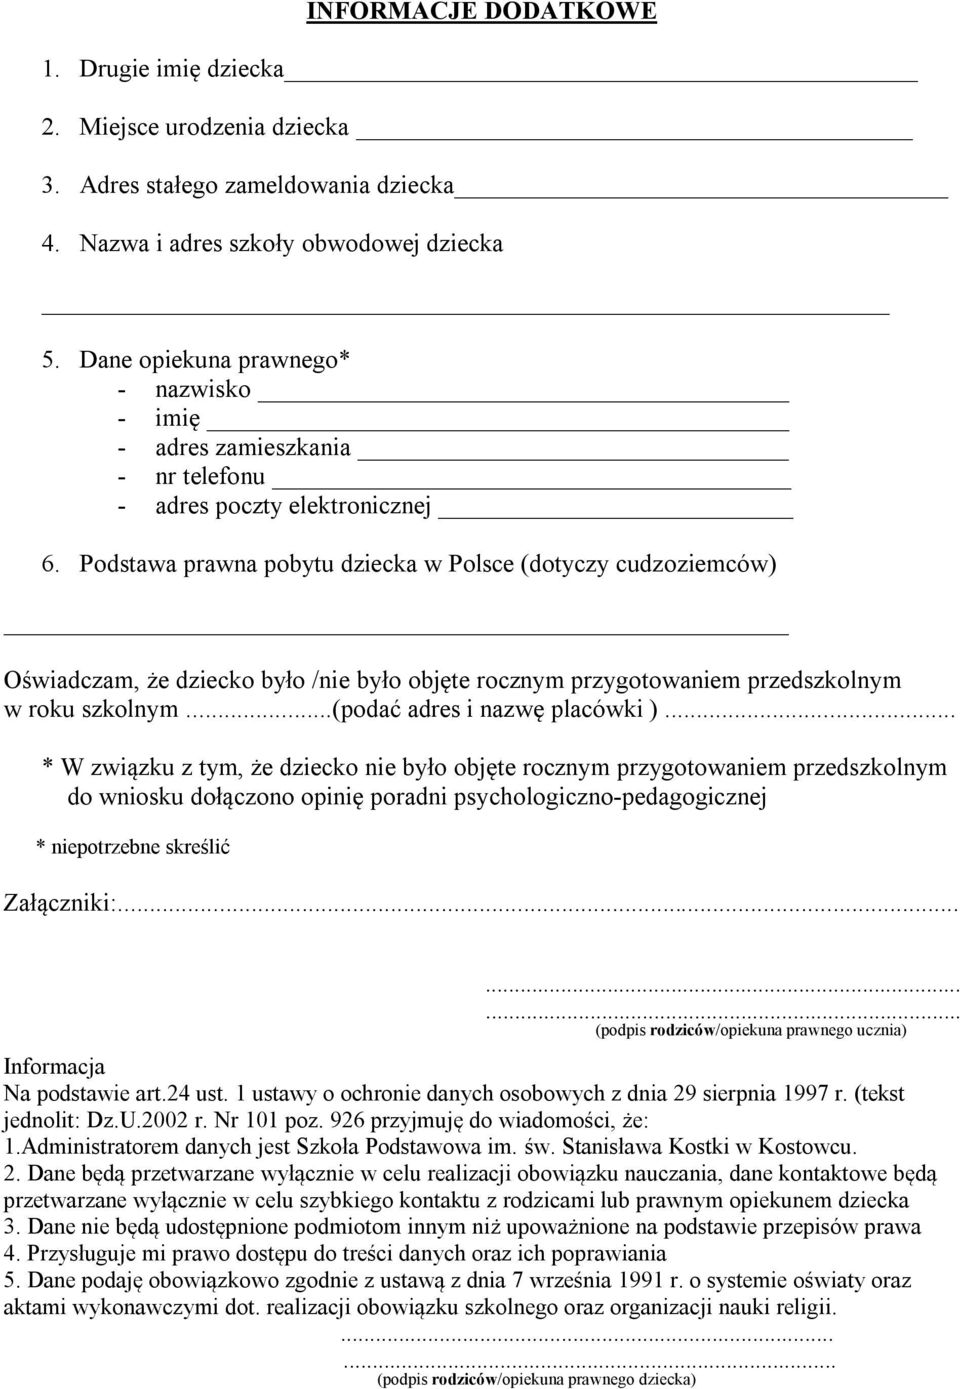 Podstawa prawna pobytu dziecka w Polsce (dotyczy cudzoziemców) Oświadczam, że dziecko było /nie było objęte rocznym przygotowaniem przedszkolnym w roku szkolnym...(podać adres i nazwę placówki ).